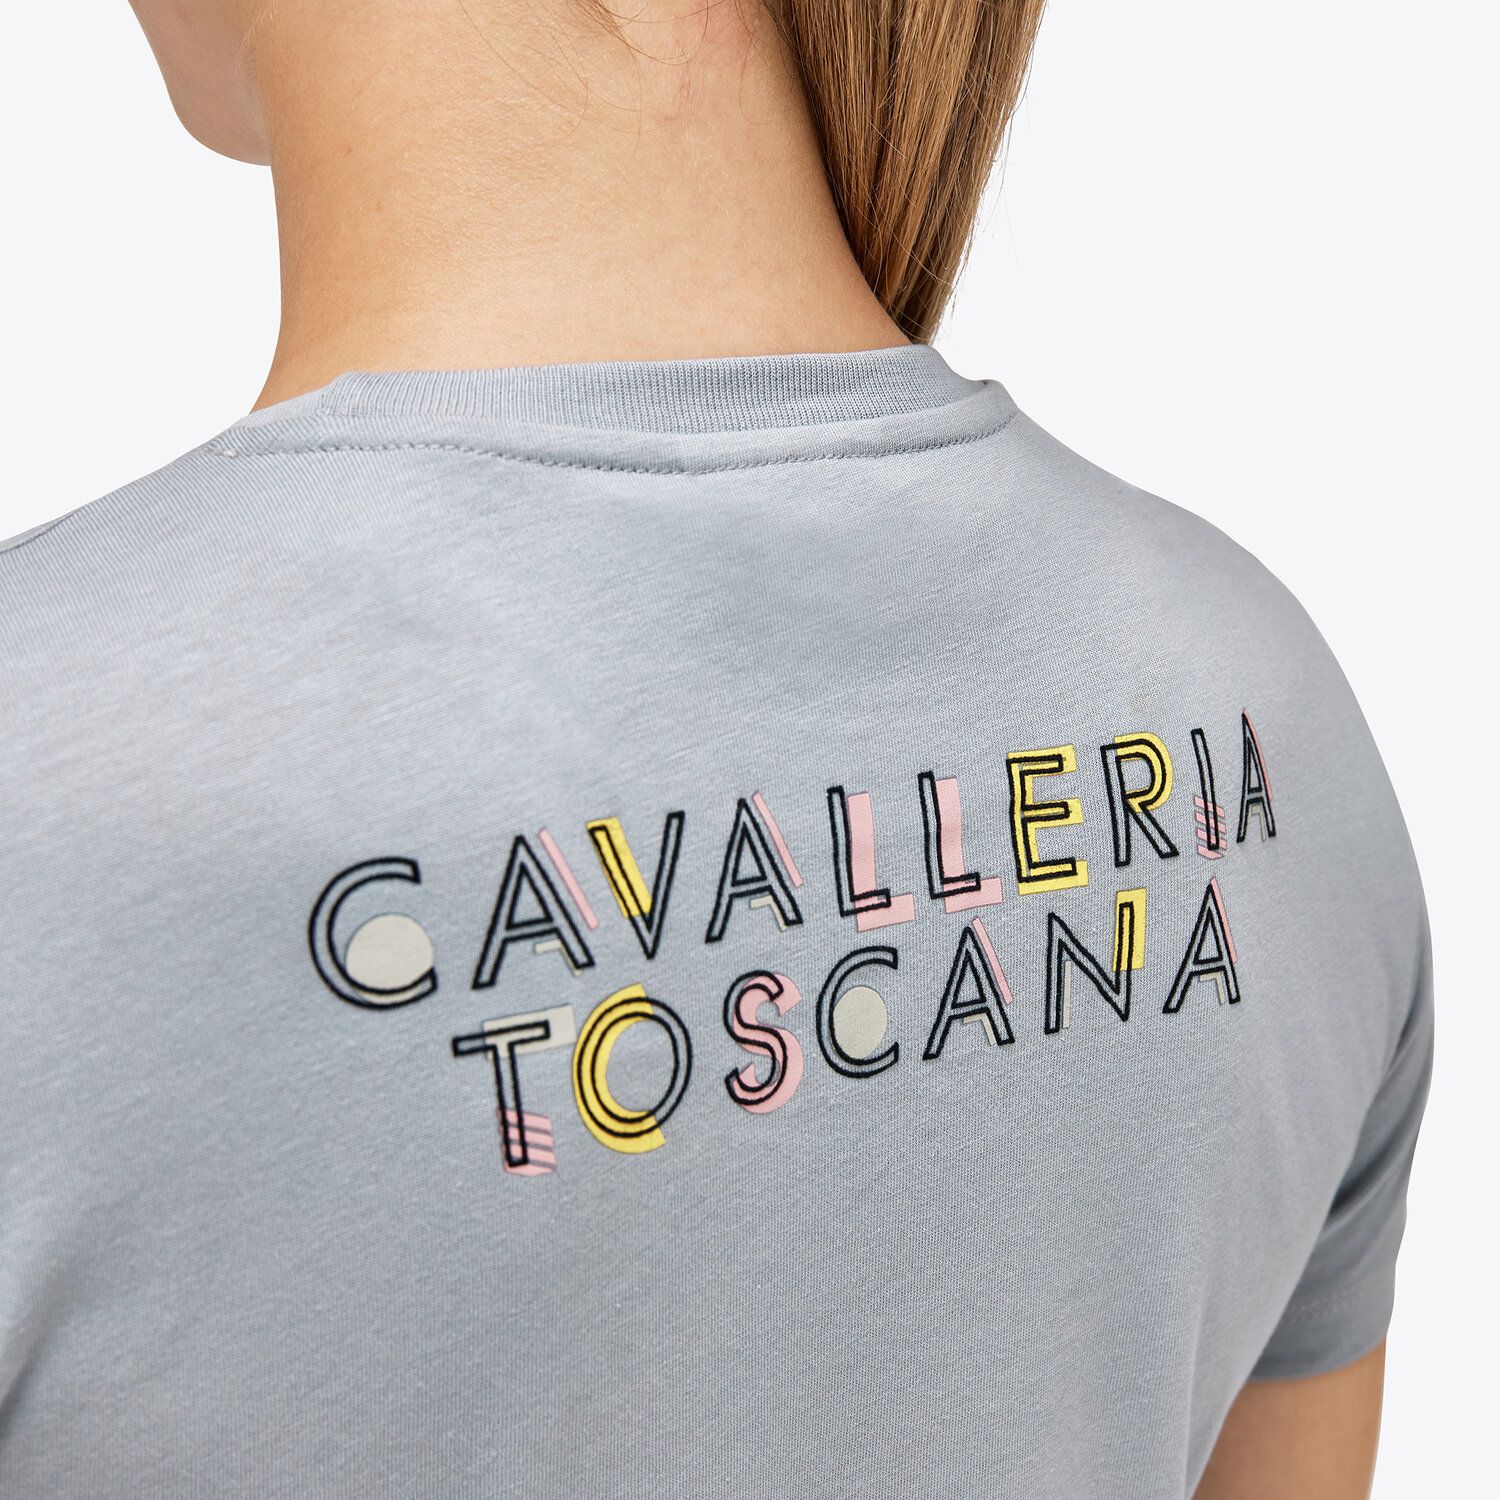 Cavalleria Toscana Girls’ cotton jersey t-shirt LIGHT GREY-4